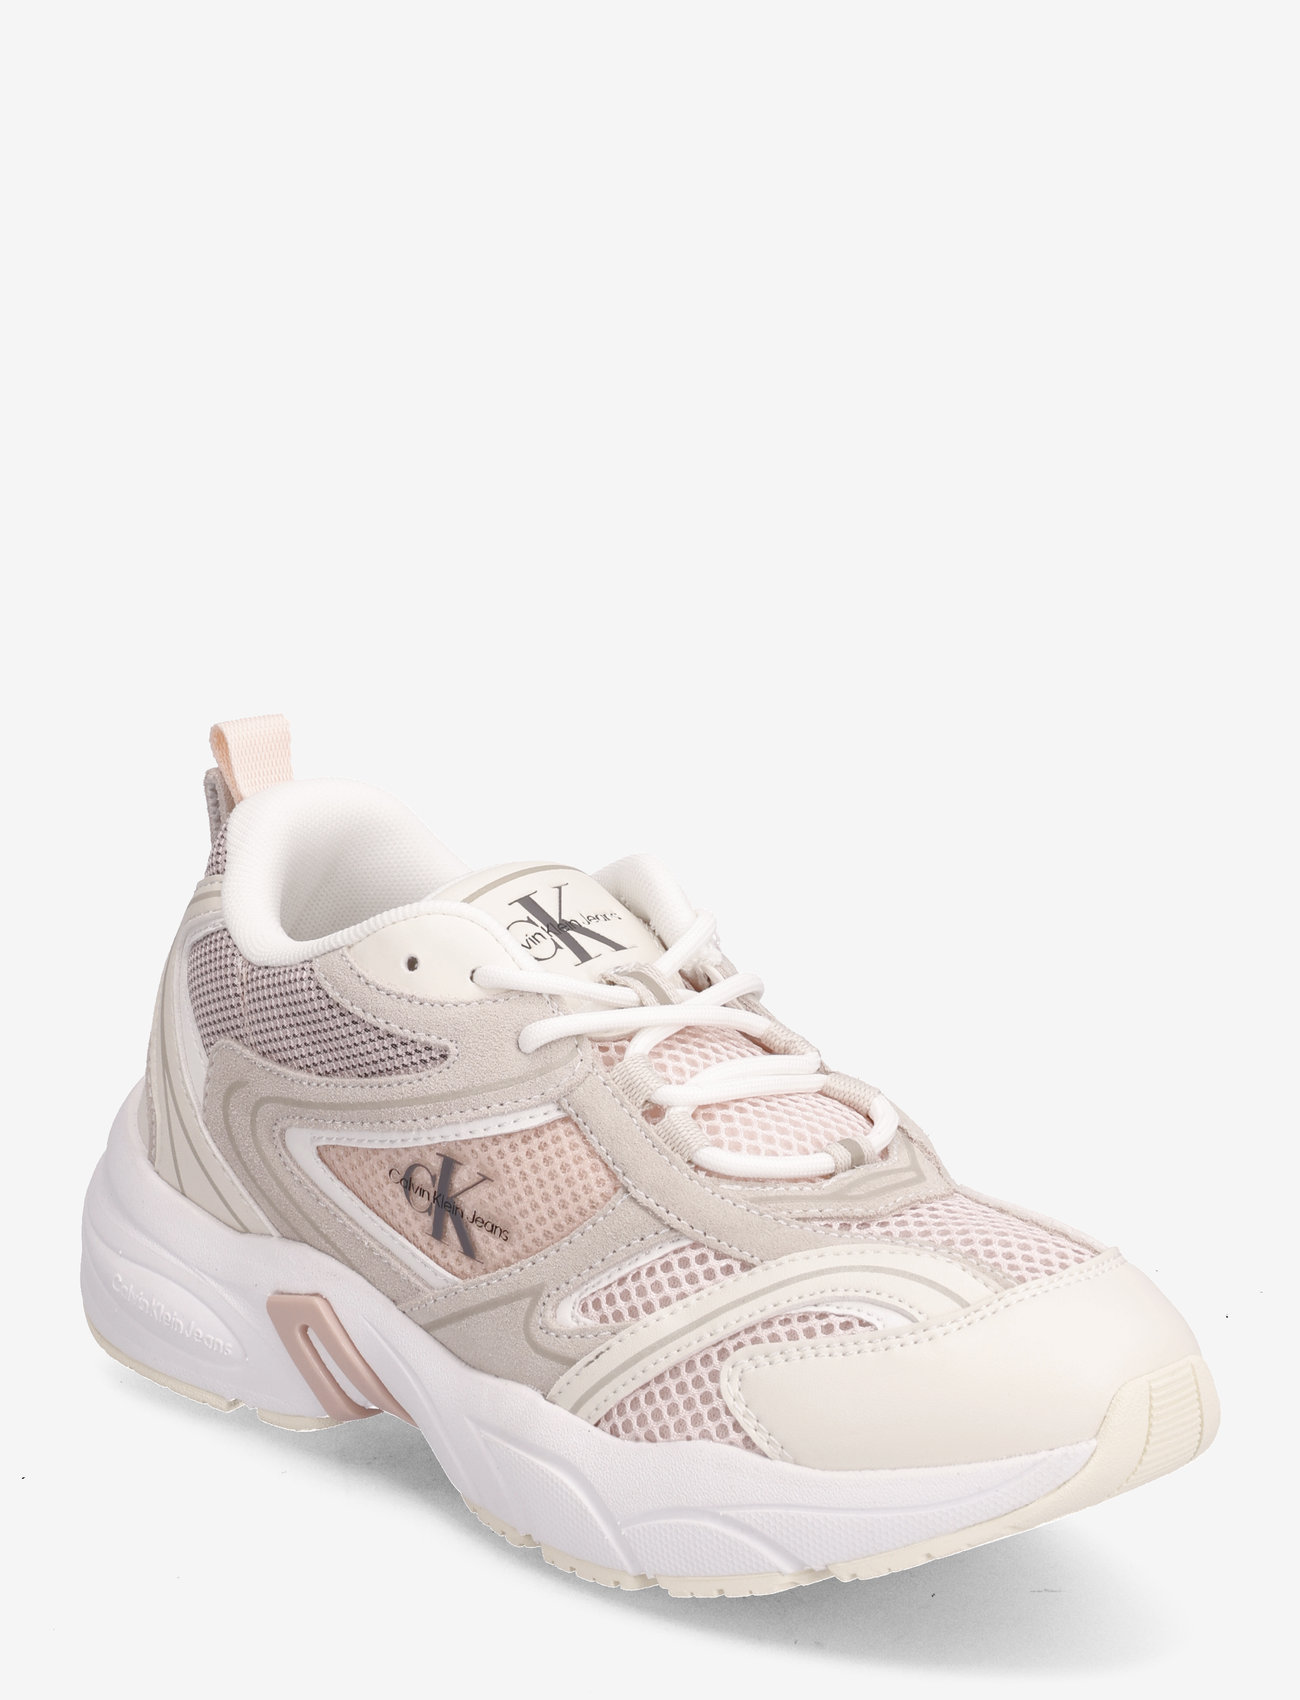 Calvin Klein - RETRO TENNIS SU-MESH WN - low top sneakers - peach blush/eggshell/creamy white - 0